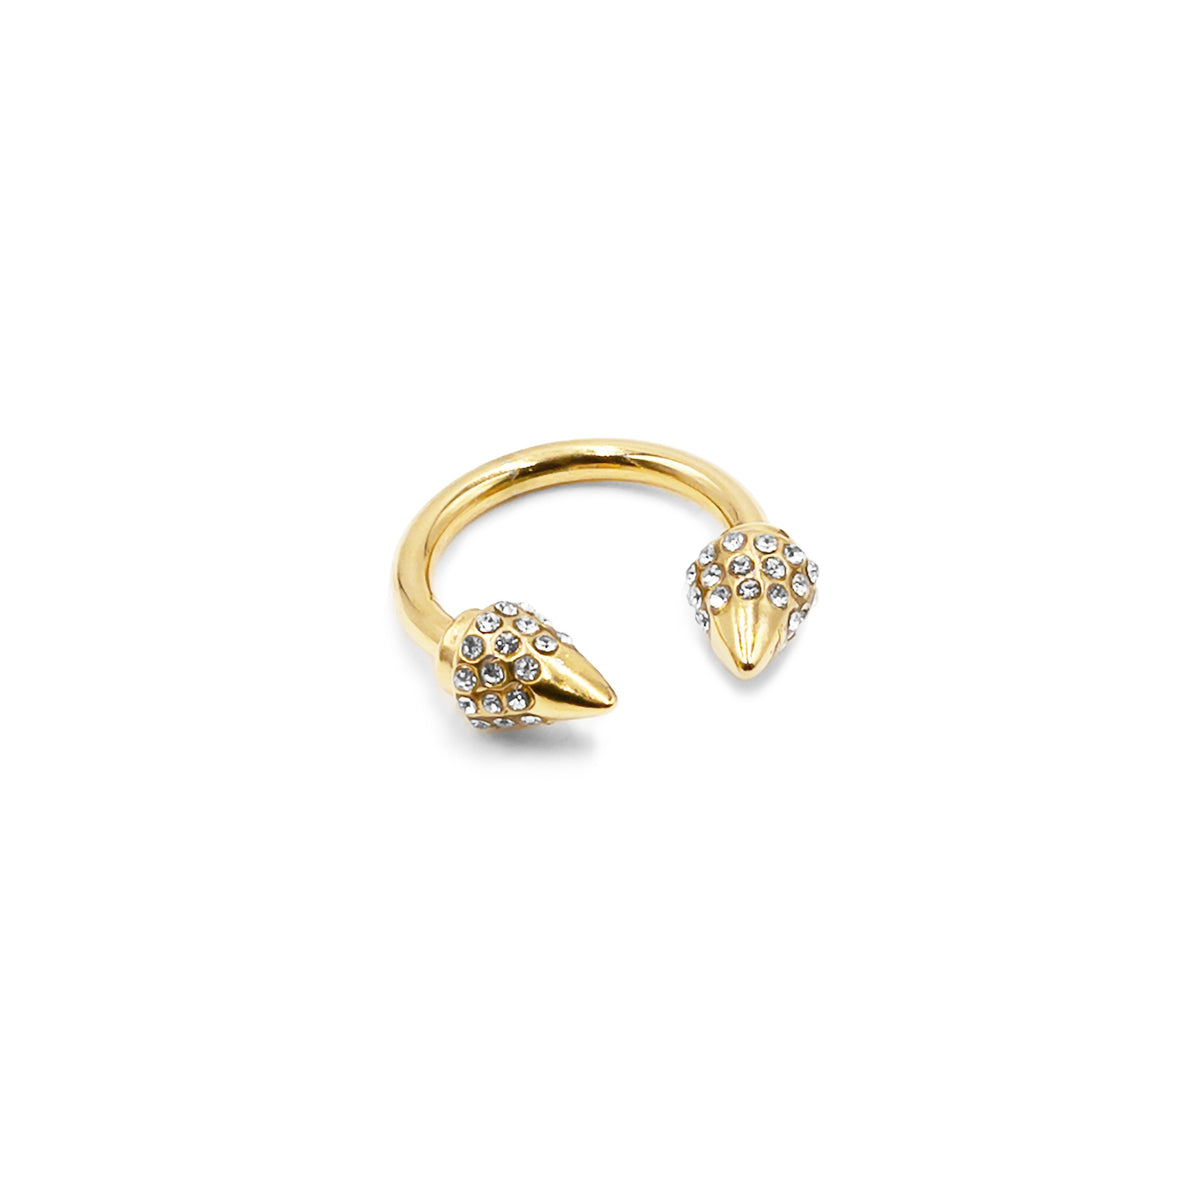 Collezione Spike - Anello Bling in oro, gioielli di alta qualità per uomo e donna